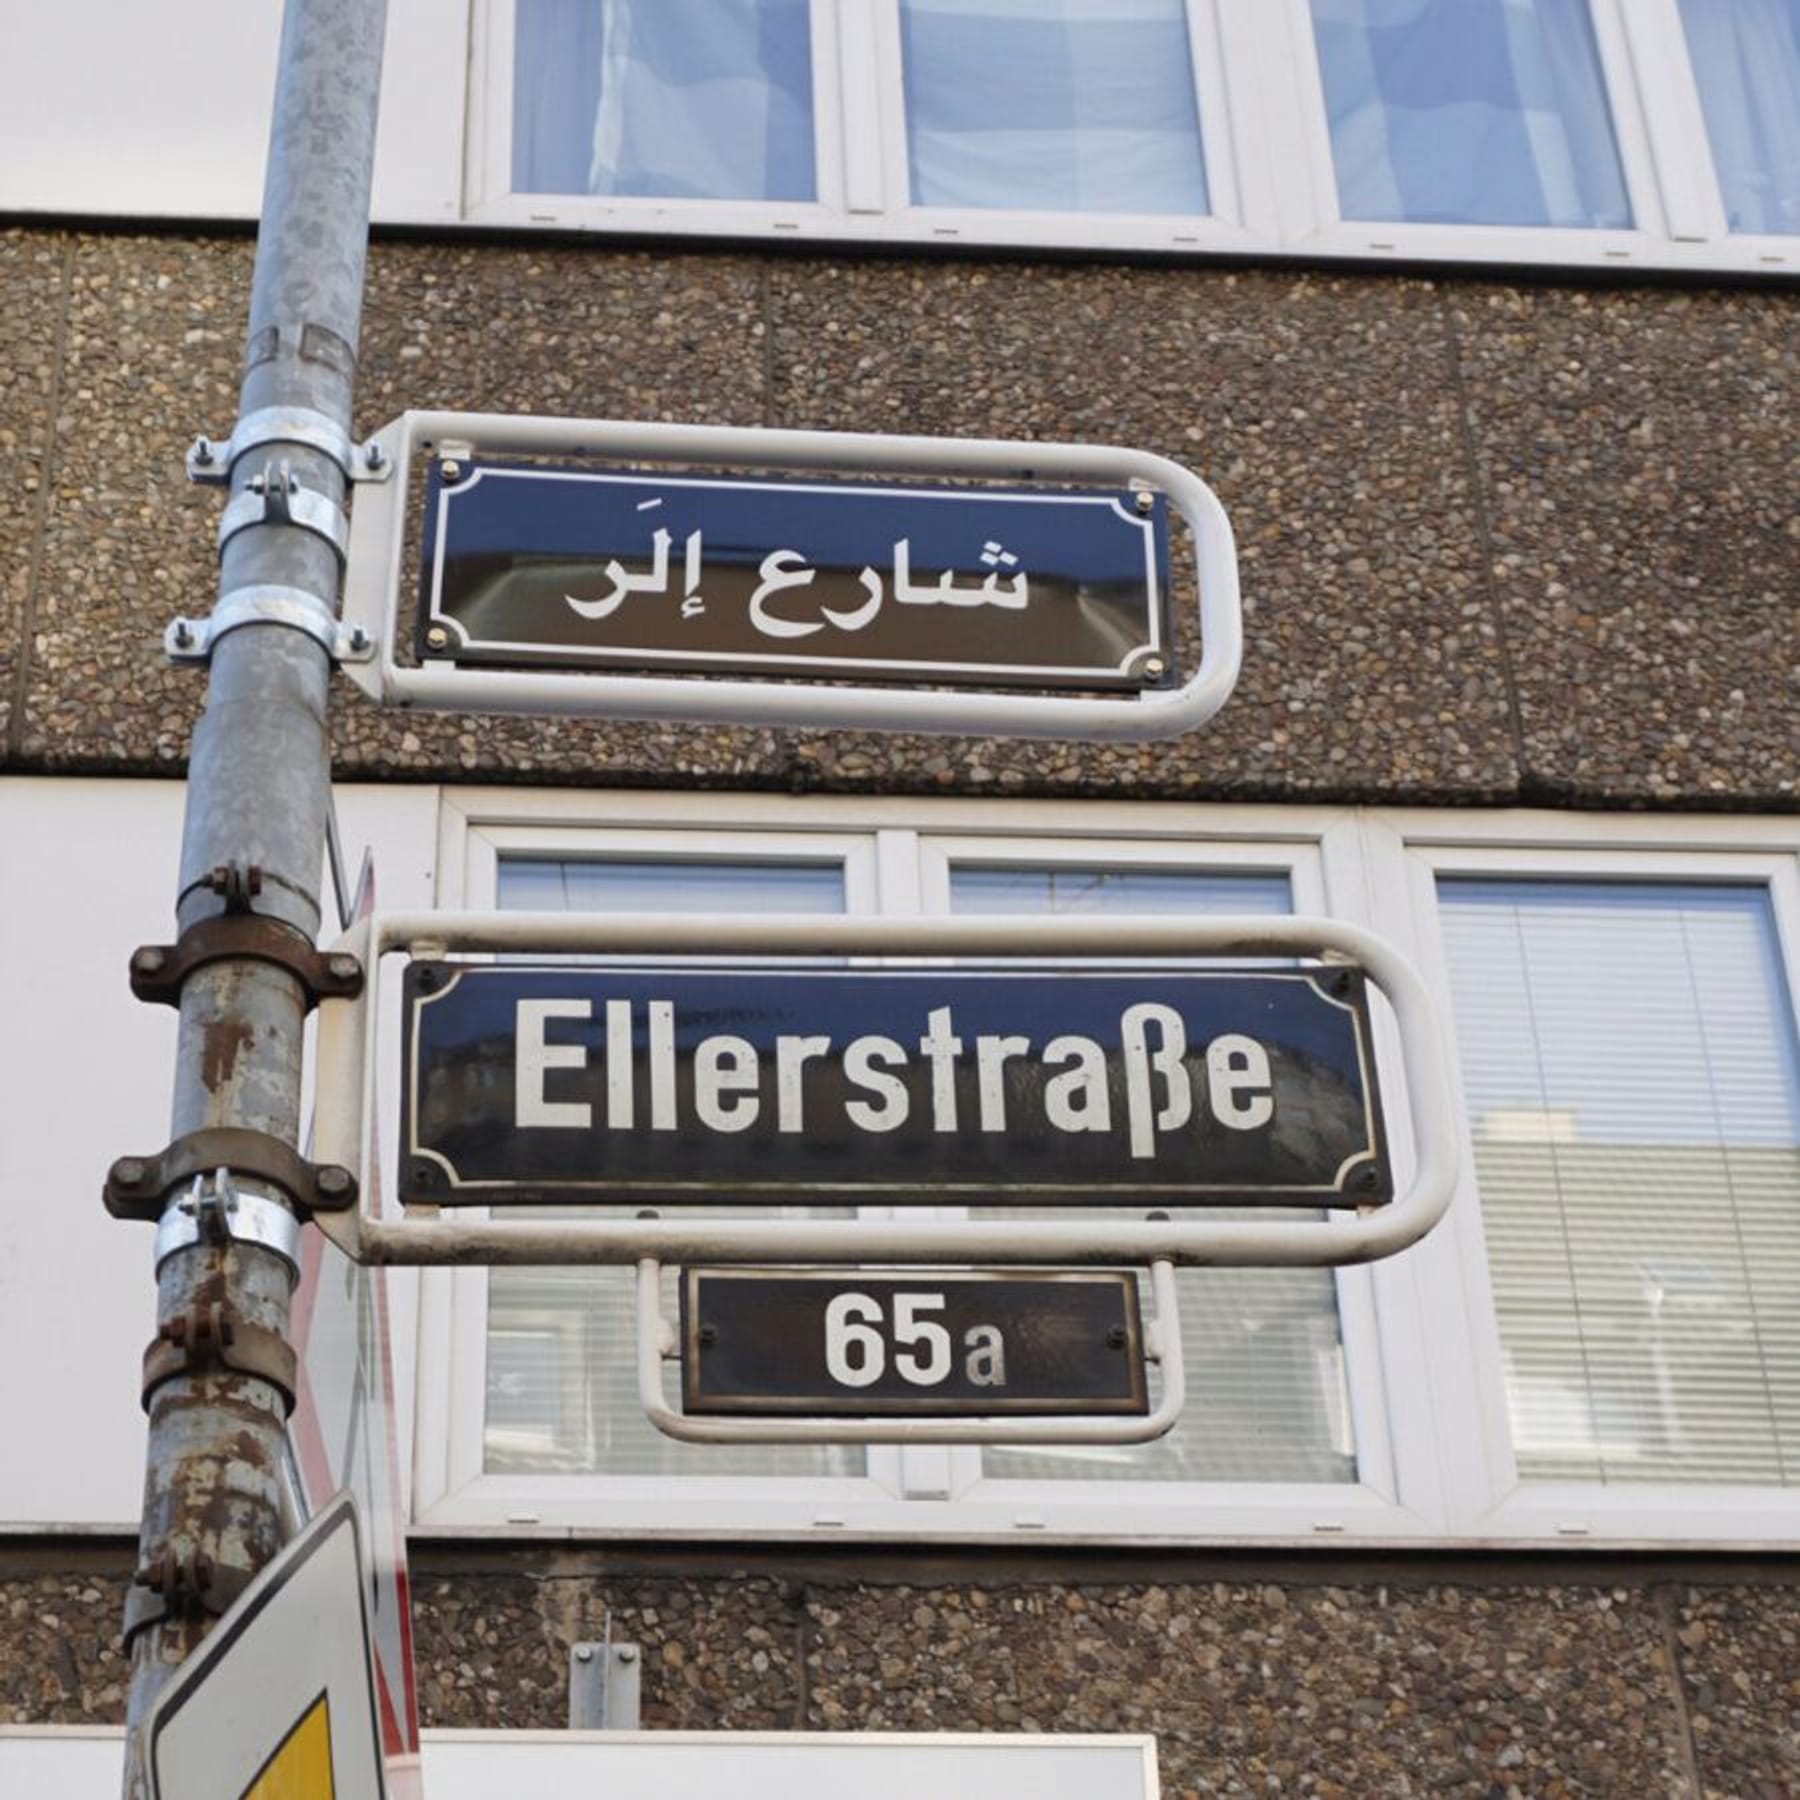 Rassismus in Düsseldorf: Arabisches Straßenschild verunstaltet